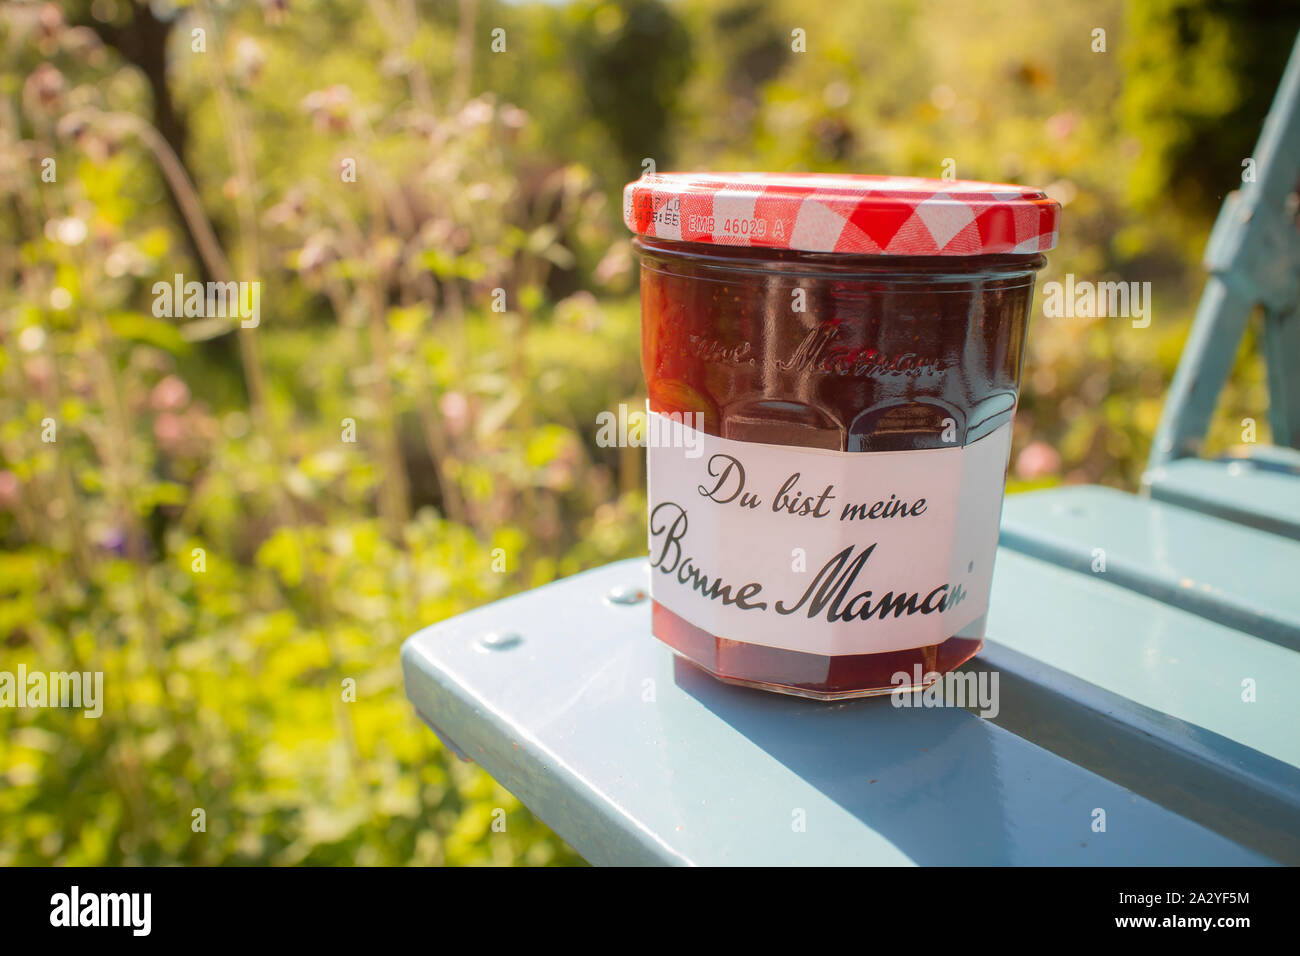 Heidelberg, Deutschland - 08.Mai 2016: Ein Glas von Bonne Maman Marmelade mit dem Aufdruck "Du bist mein Bonne Maman' - 'Du bist meine Bonne Maman" in deutscher Sprache Stockfoto